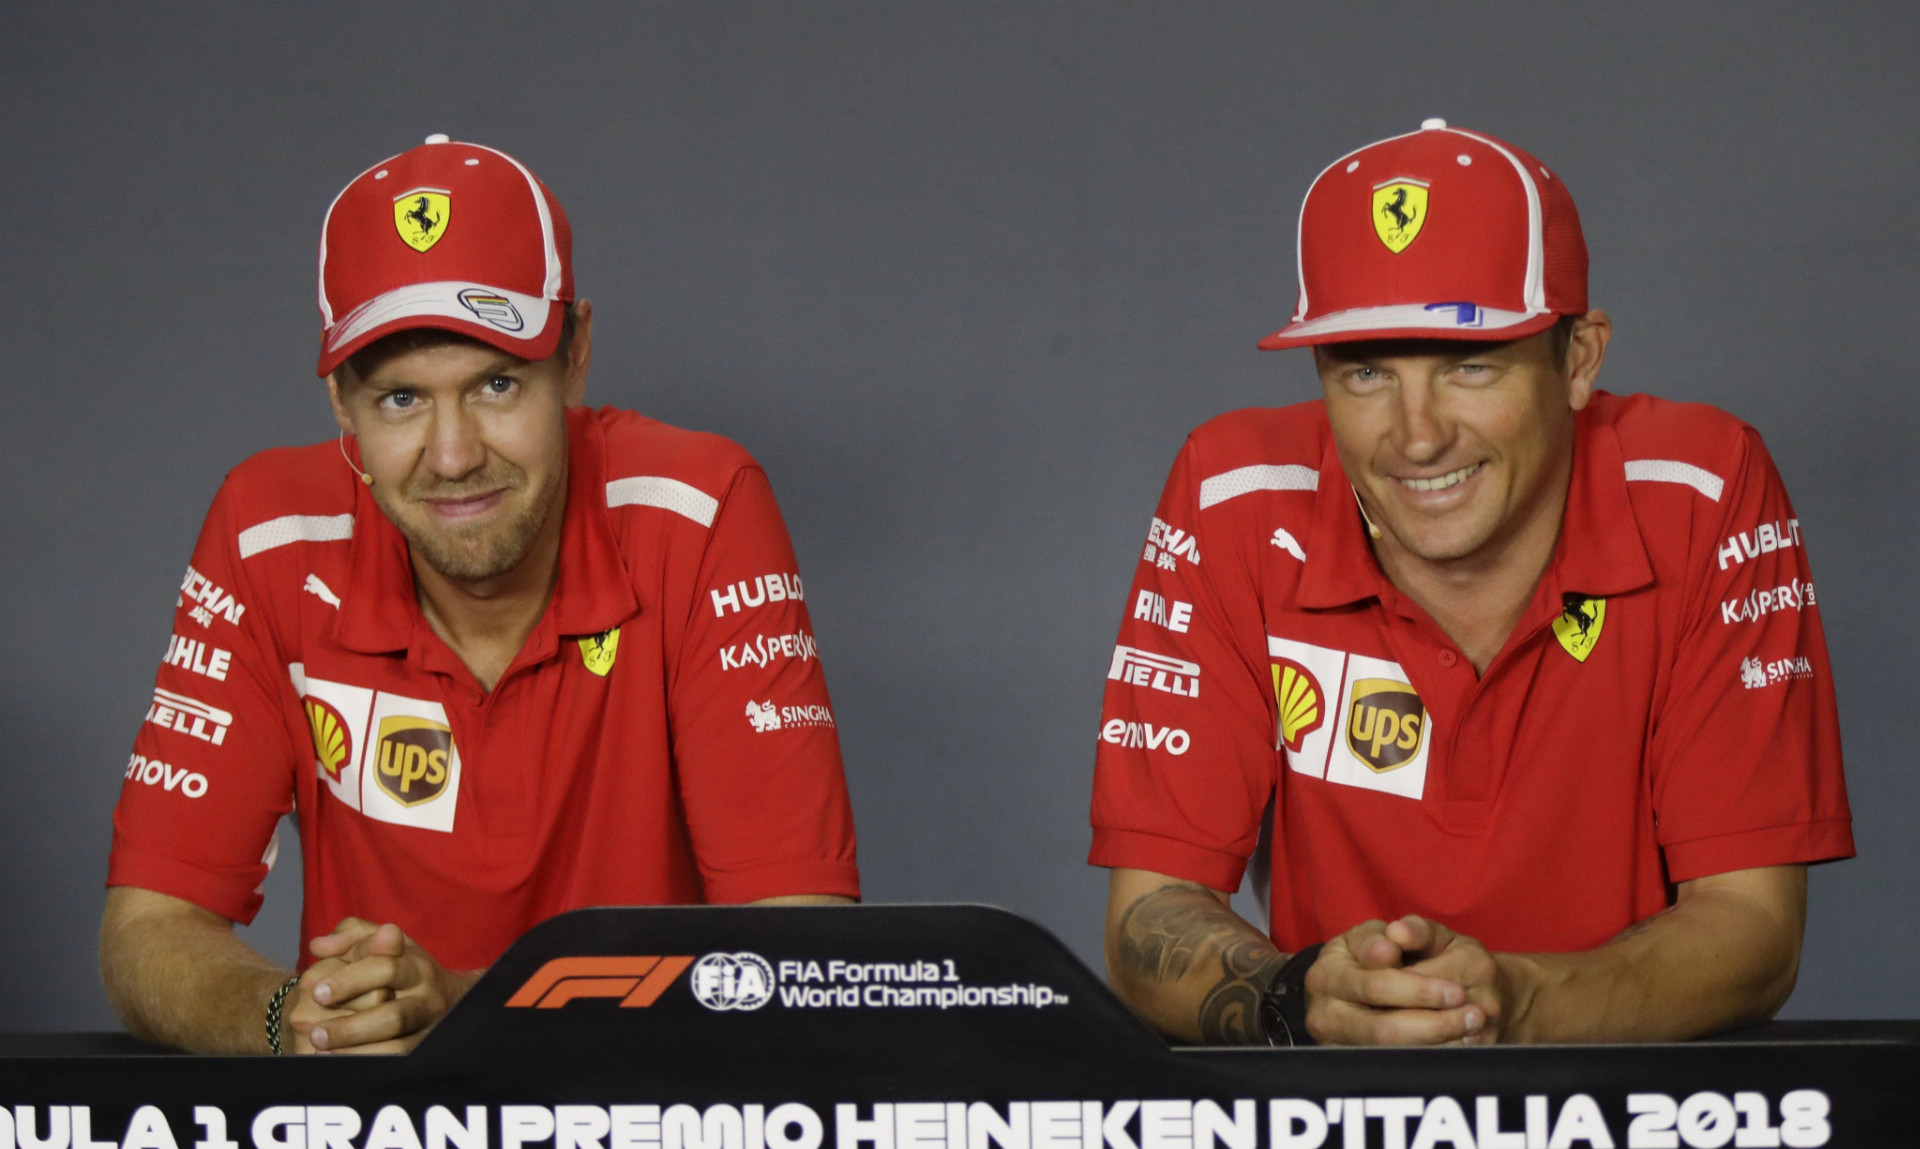 Obľúbený jazdec F1 Räikkönen zrejme svoju kariéru skončí vo Ferrari.